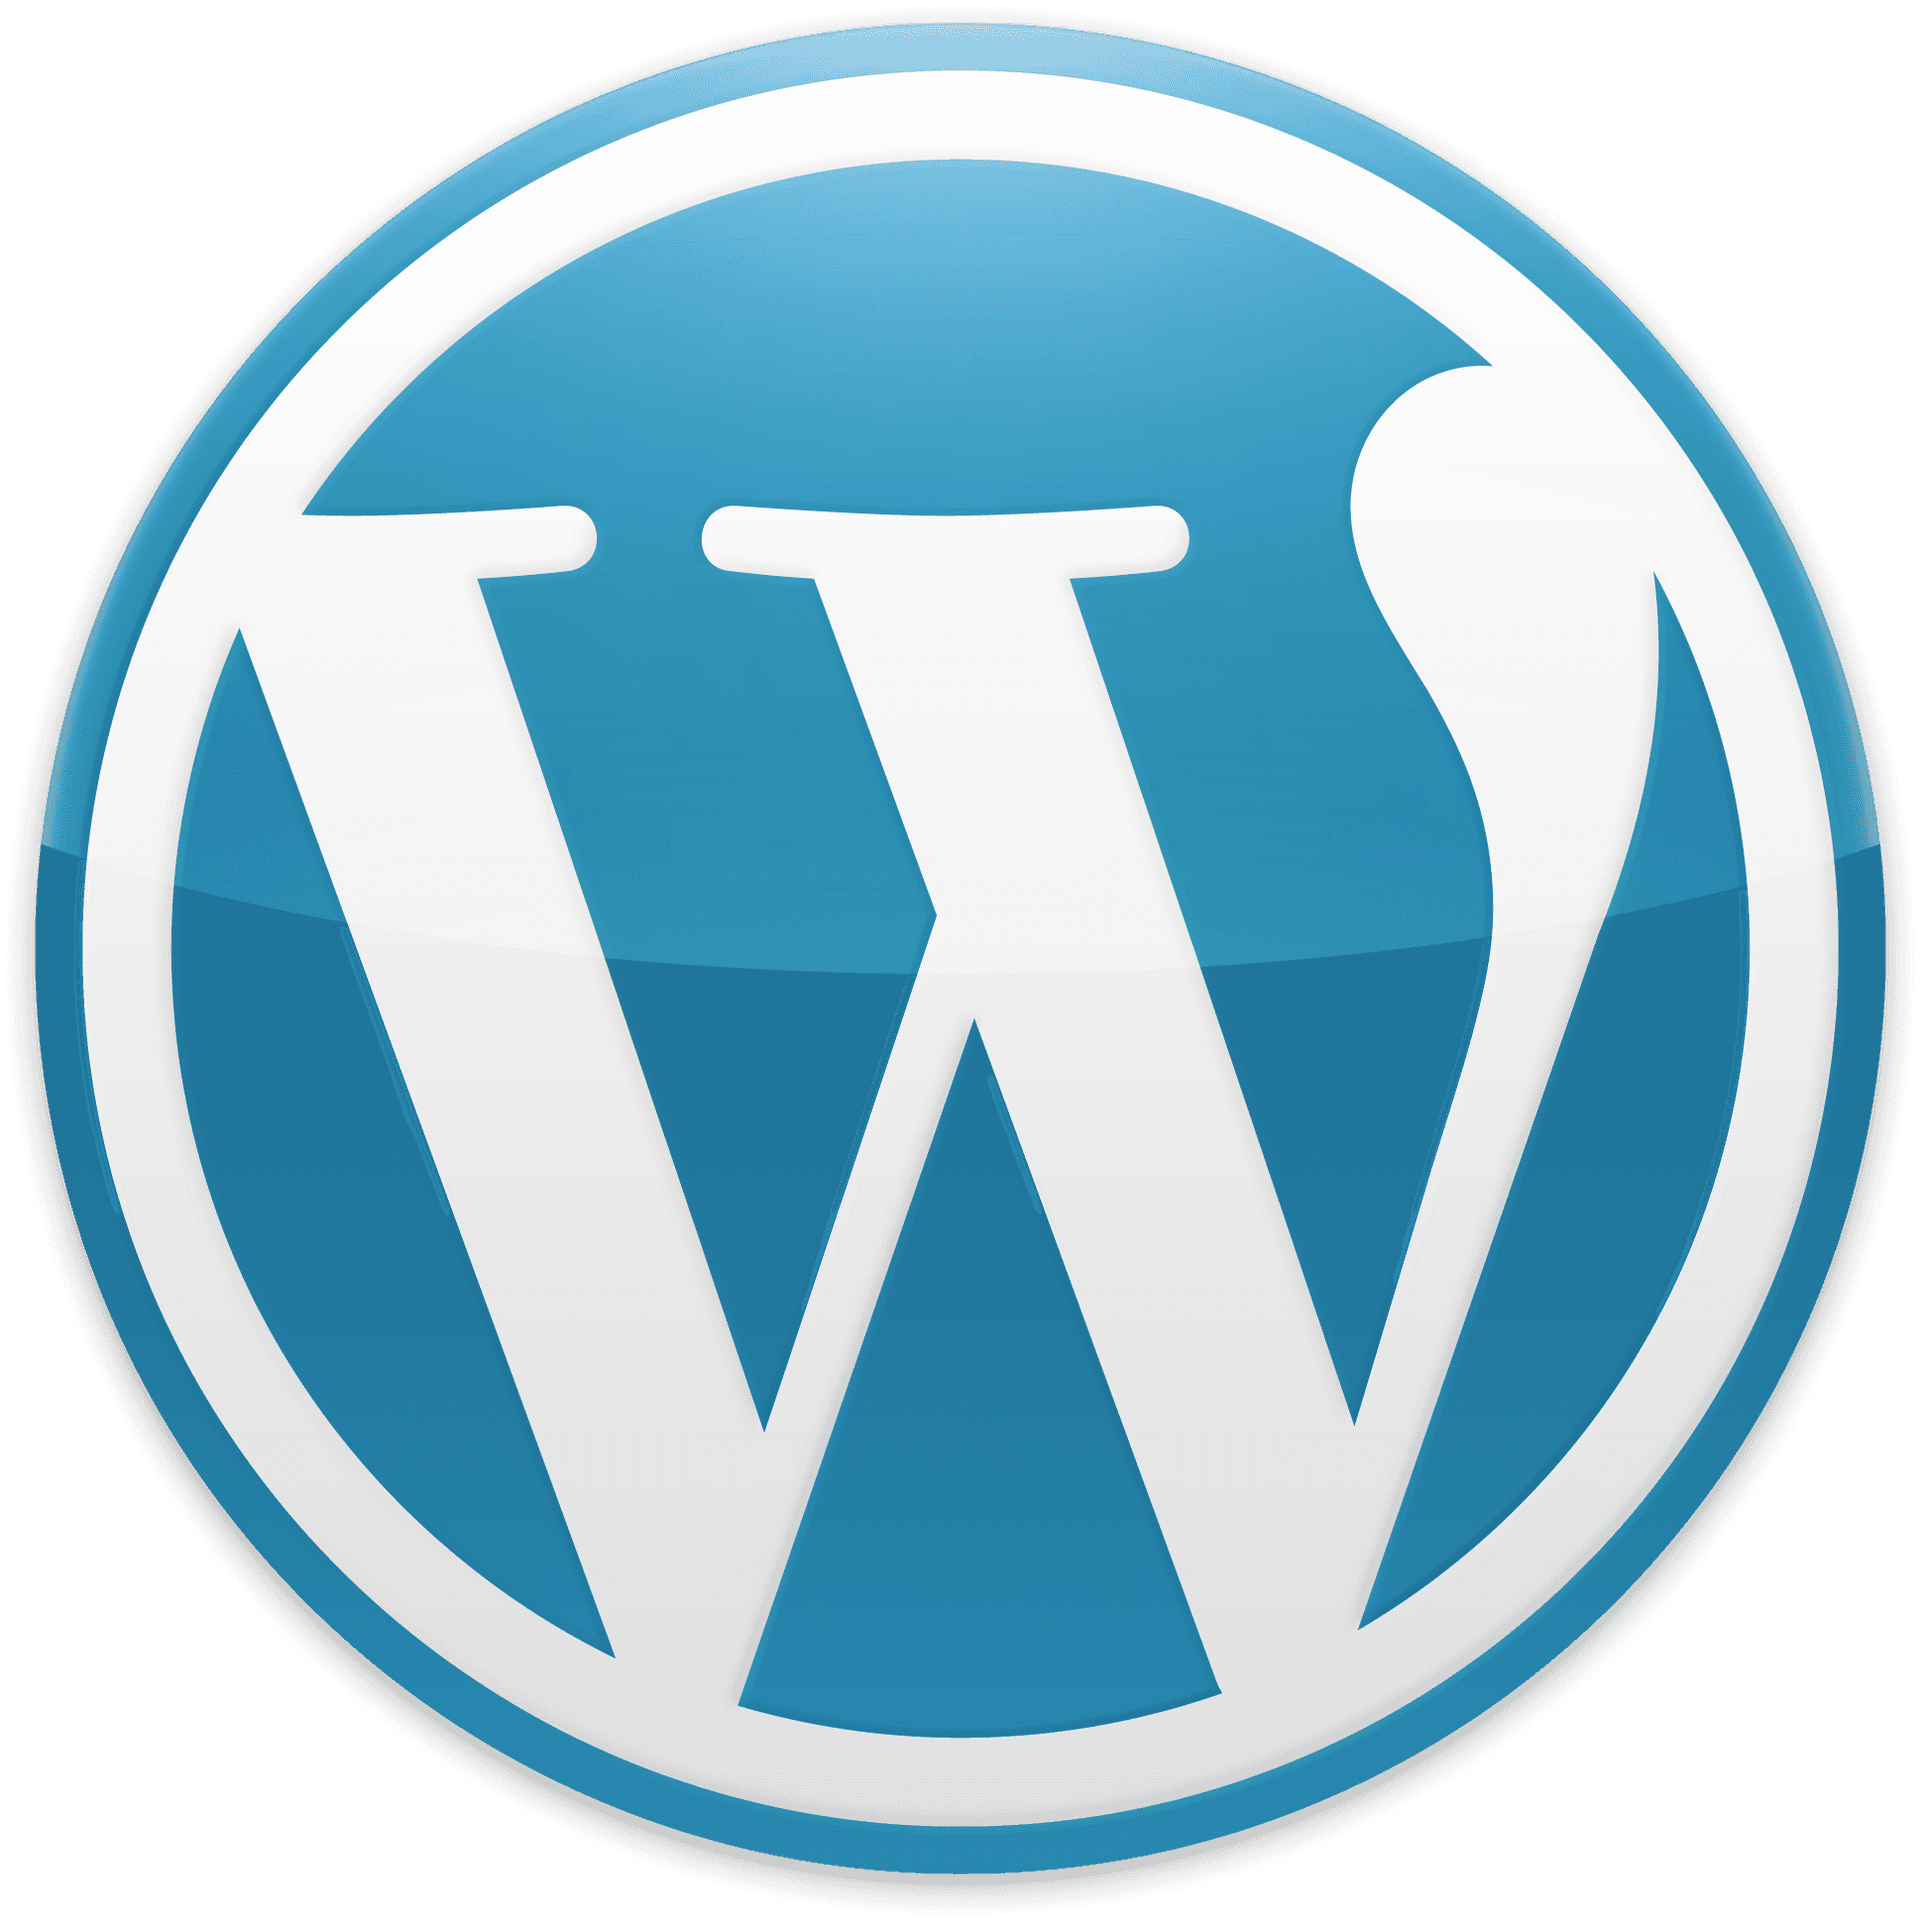 Wordpress Logo Png